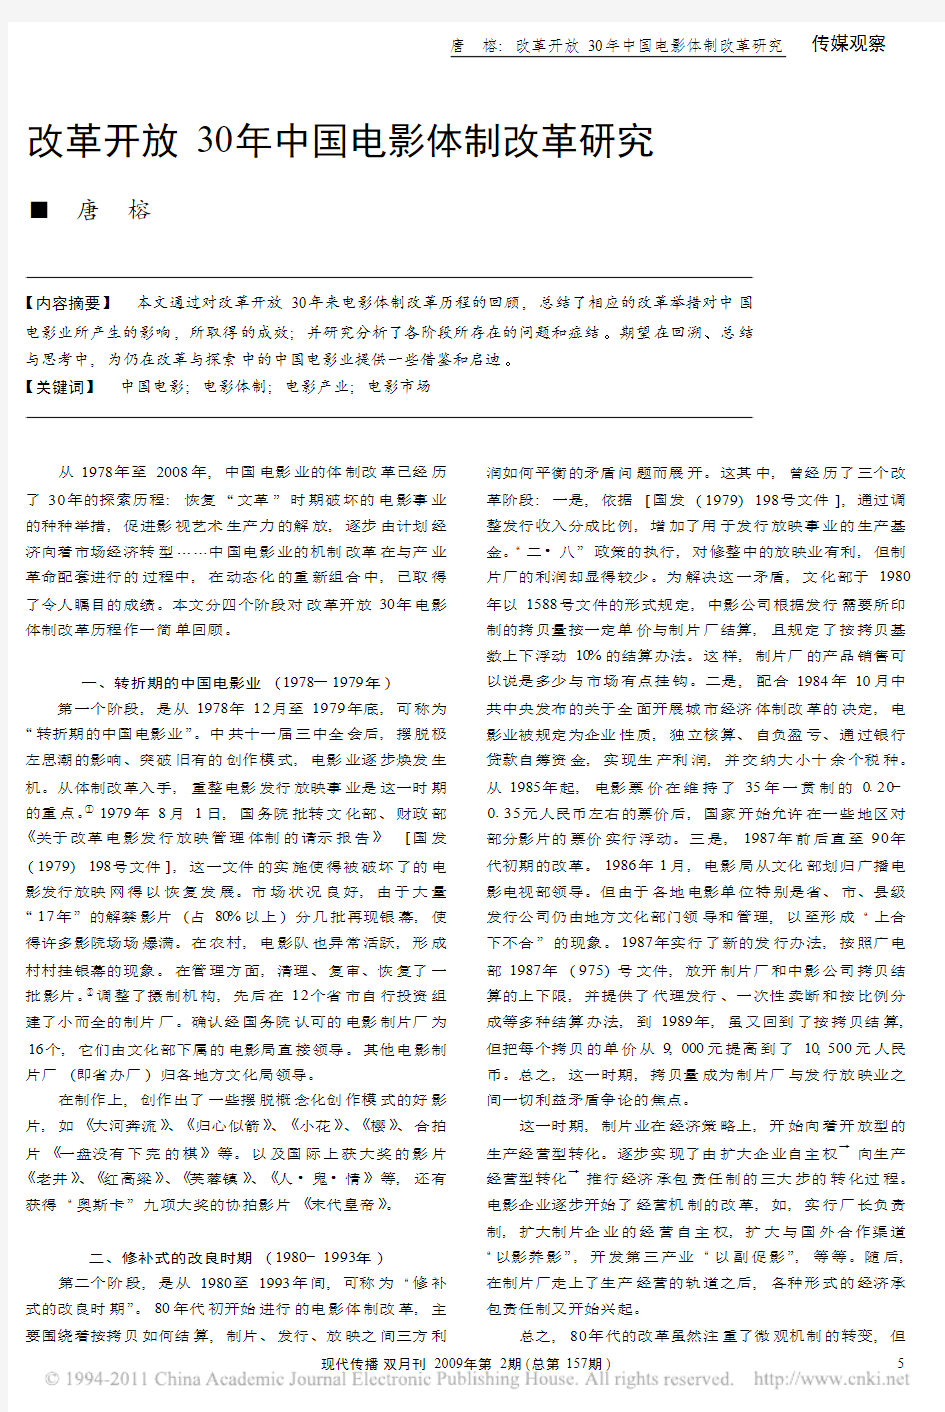 改革开放30年中国电影体制改革研究